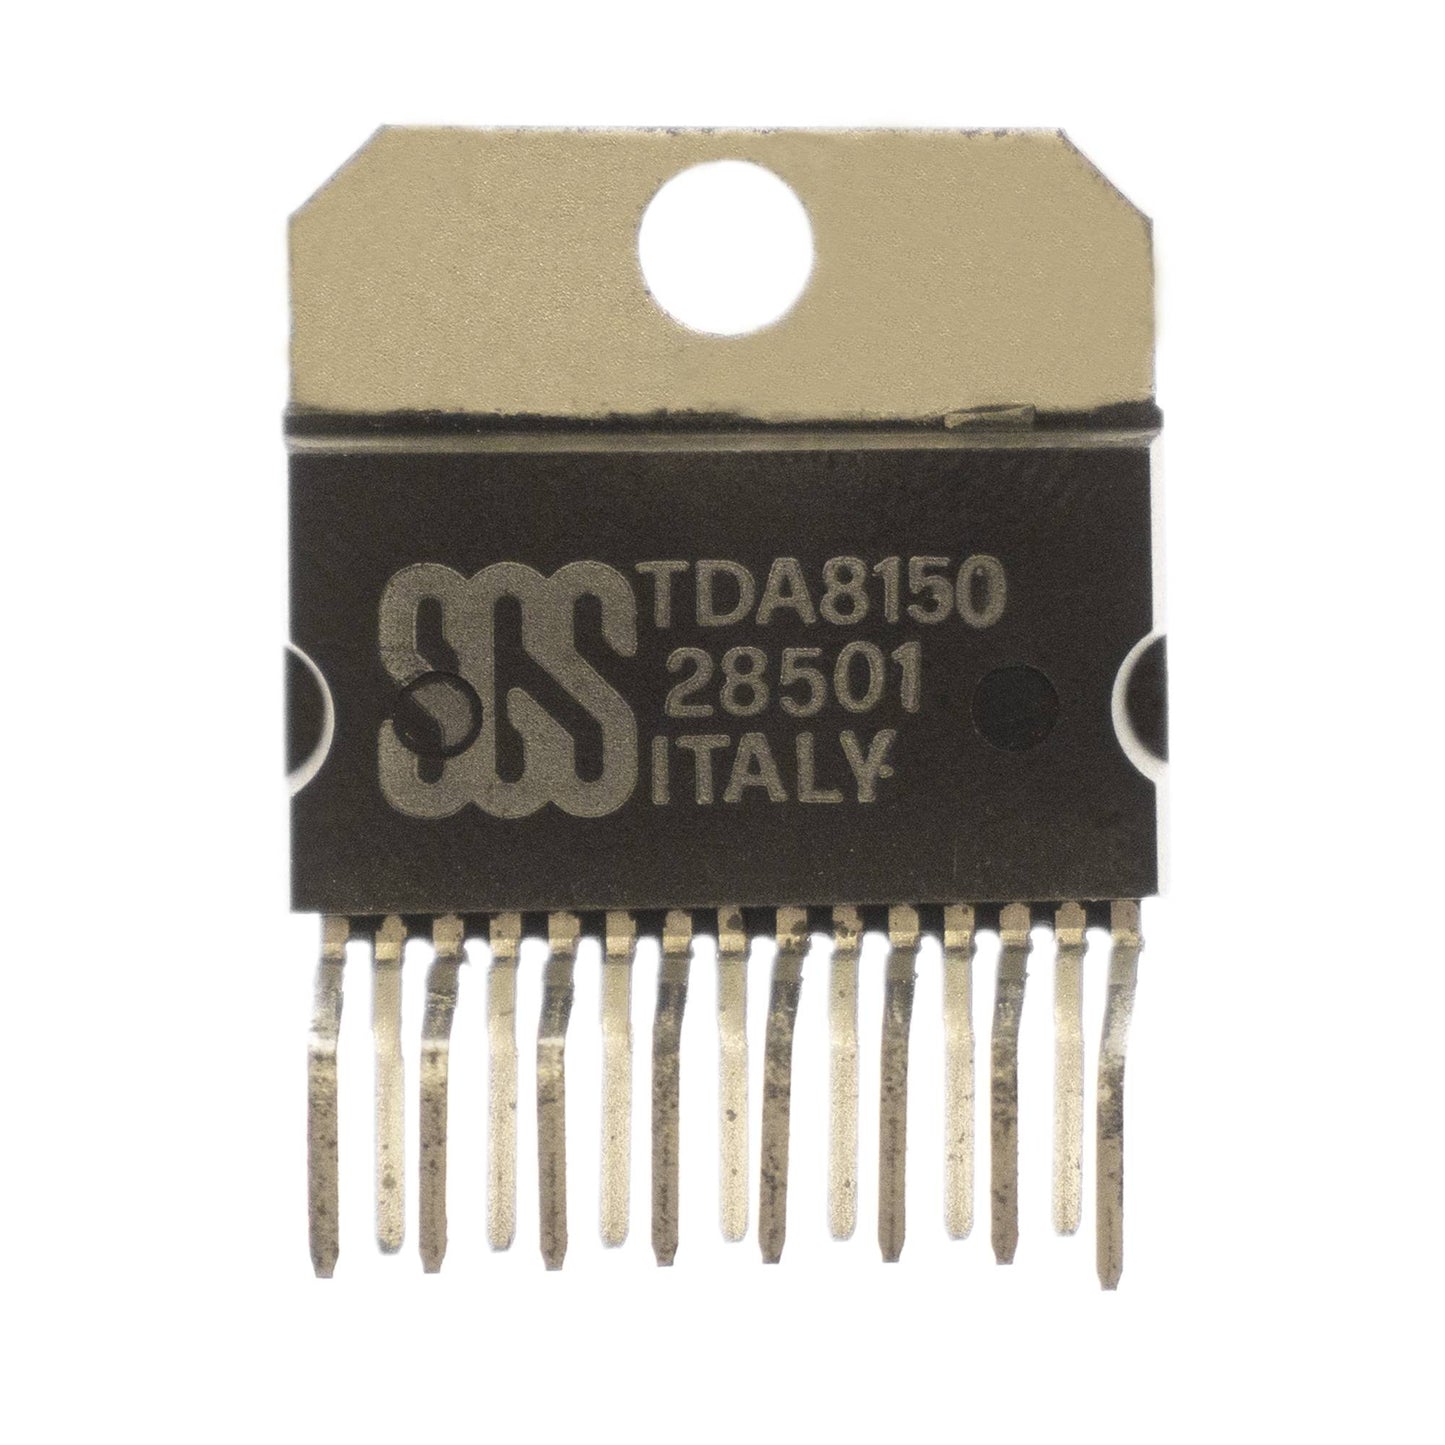 SGS TDA8150 circuito integrato, transistor, componente elettronico, 15 contatti